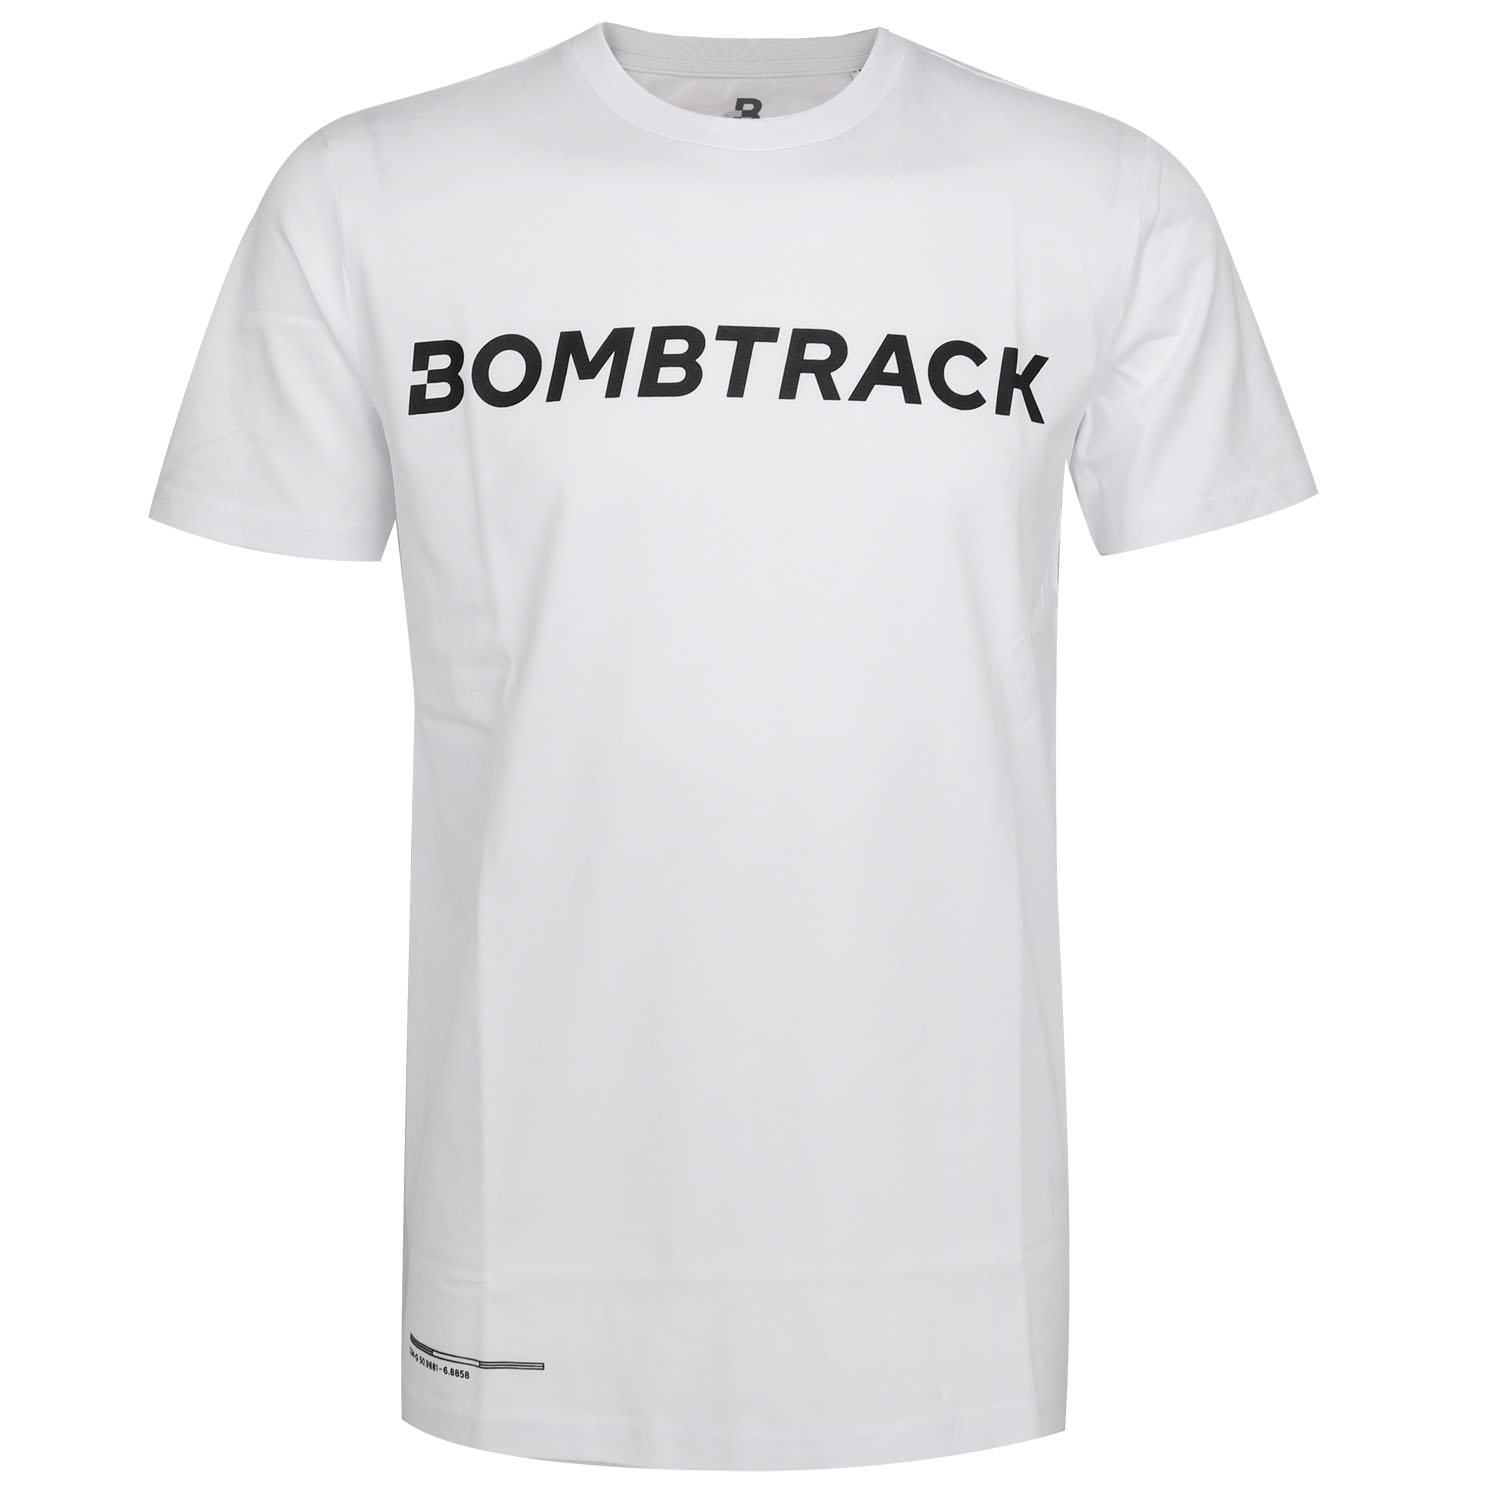 Produktbild von Bombtrack LOGO T-Shirt - weiß - schwarz print